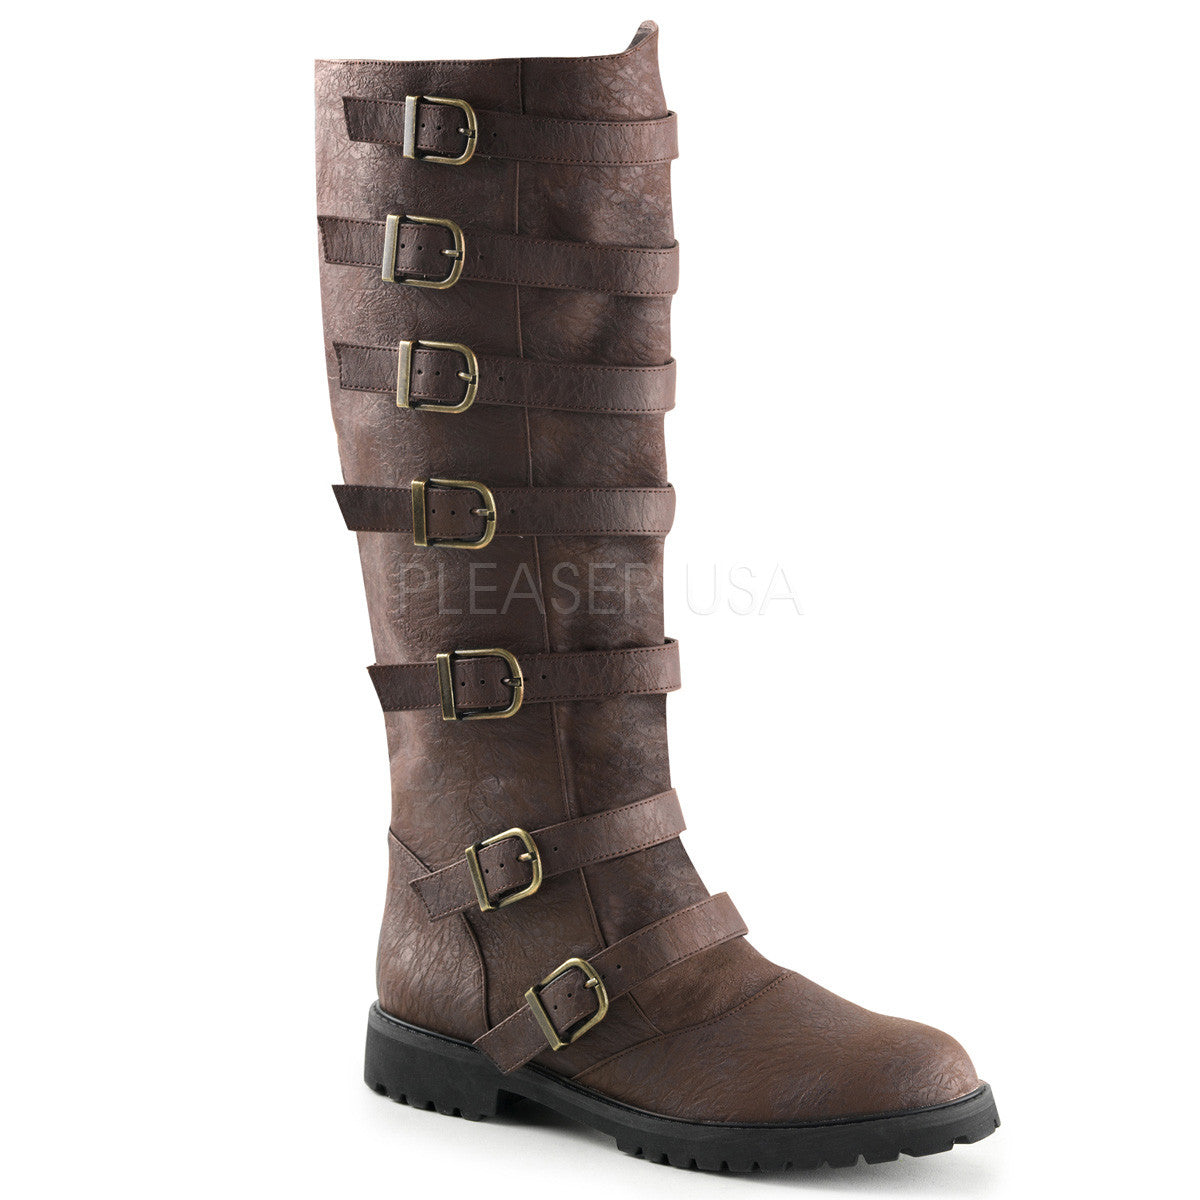 Men's Brown Renaissance Medieval Pirate Boots - Shoecup.com